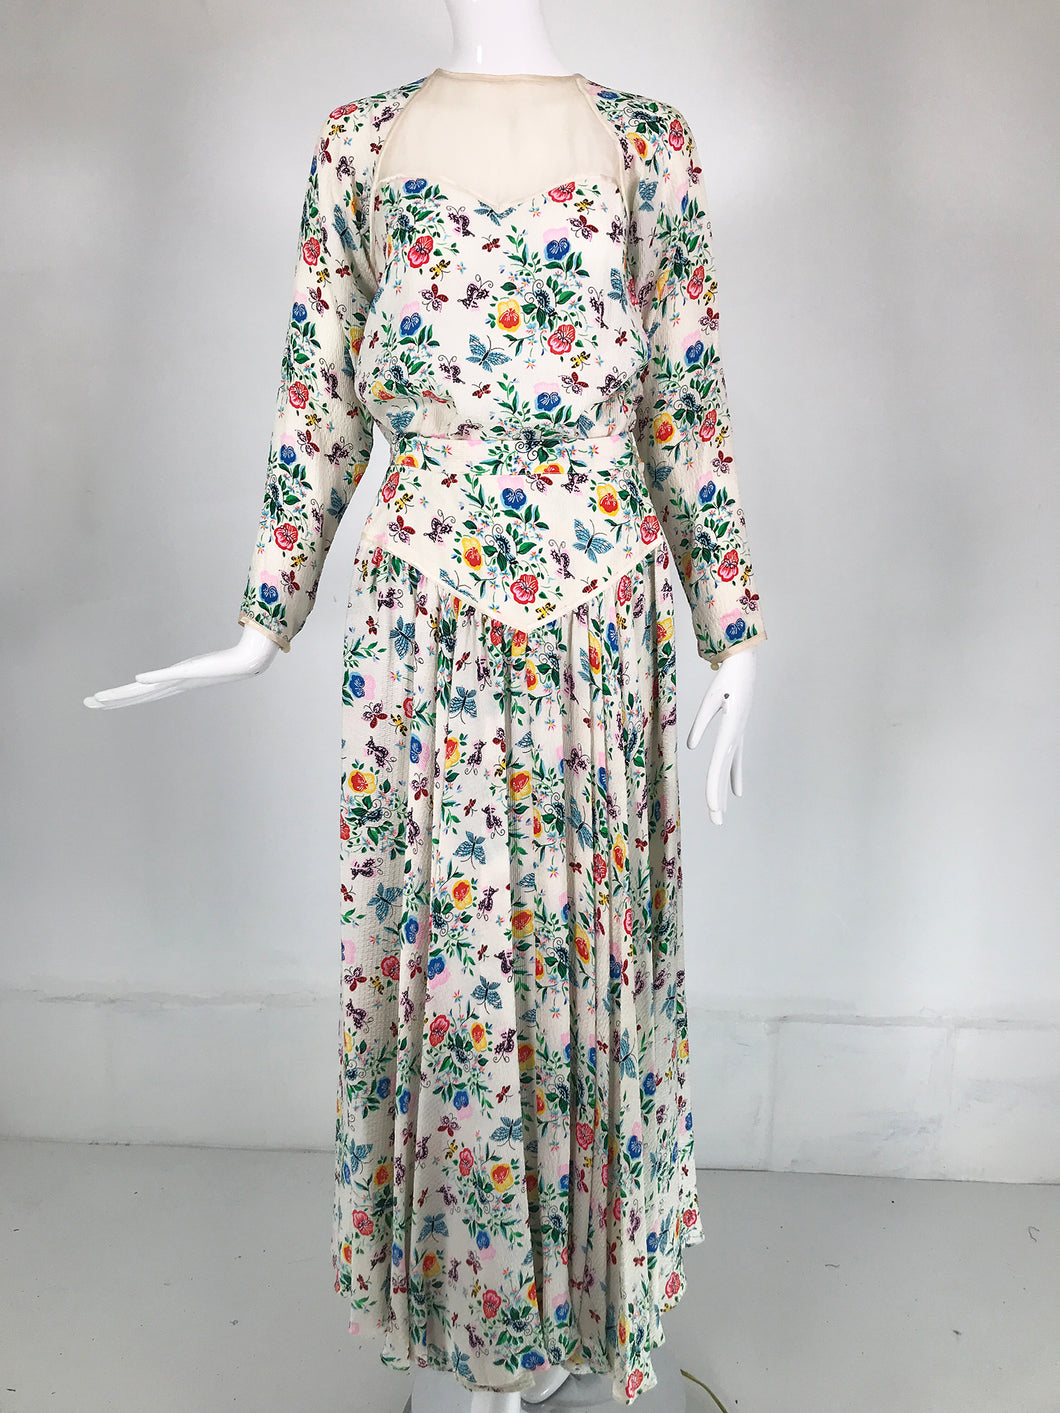 Geoffrey Beene Floral Cloque Silk & Sheer Silk Top & Yoke Hip Maxi Skirt 1970s